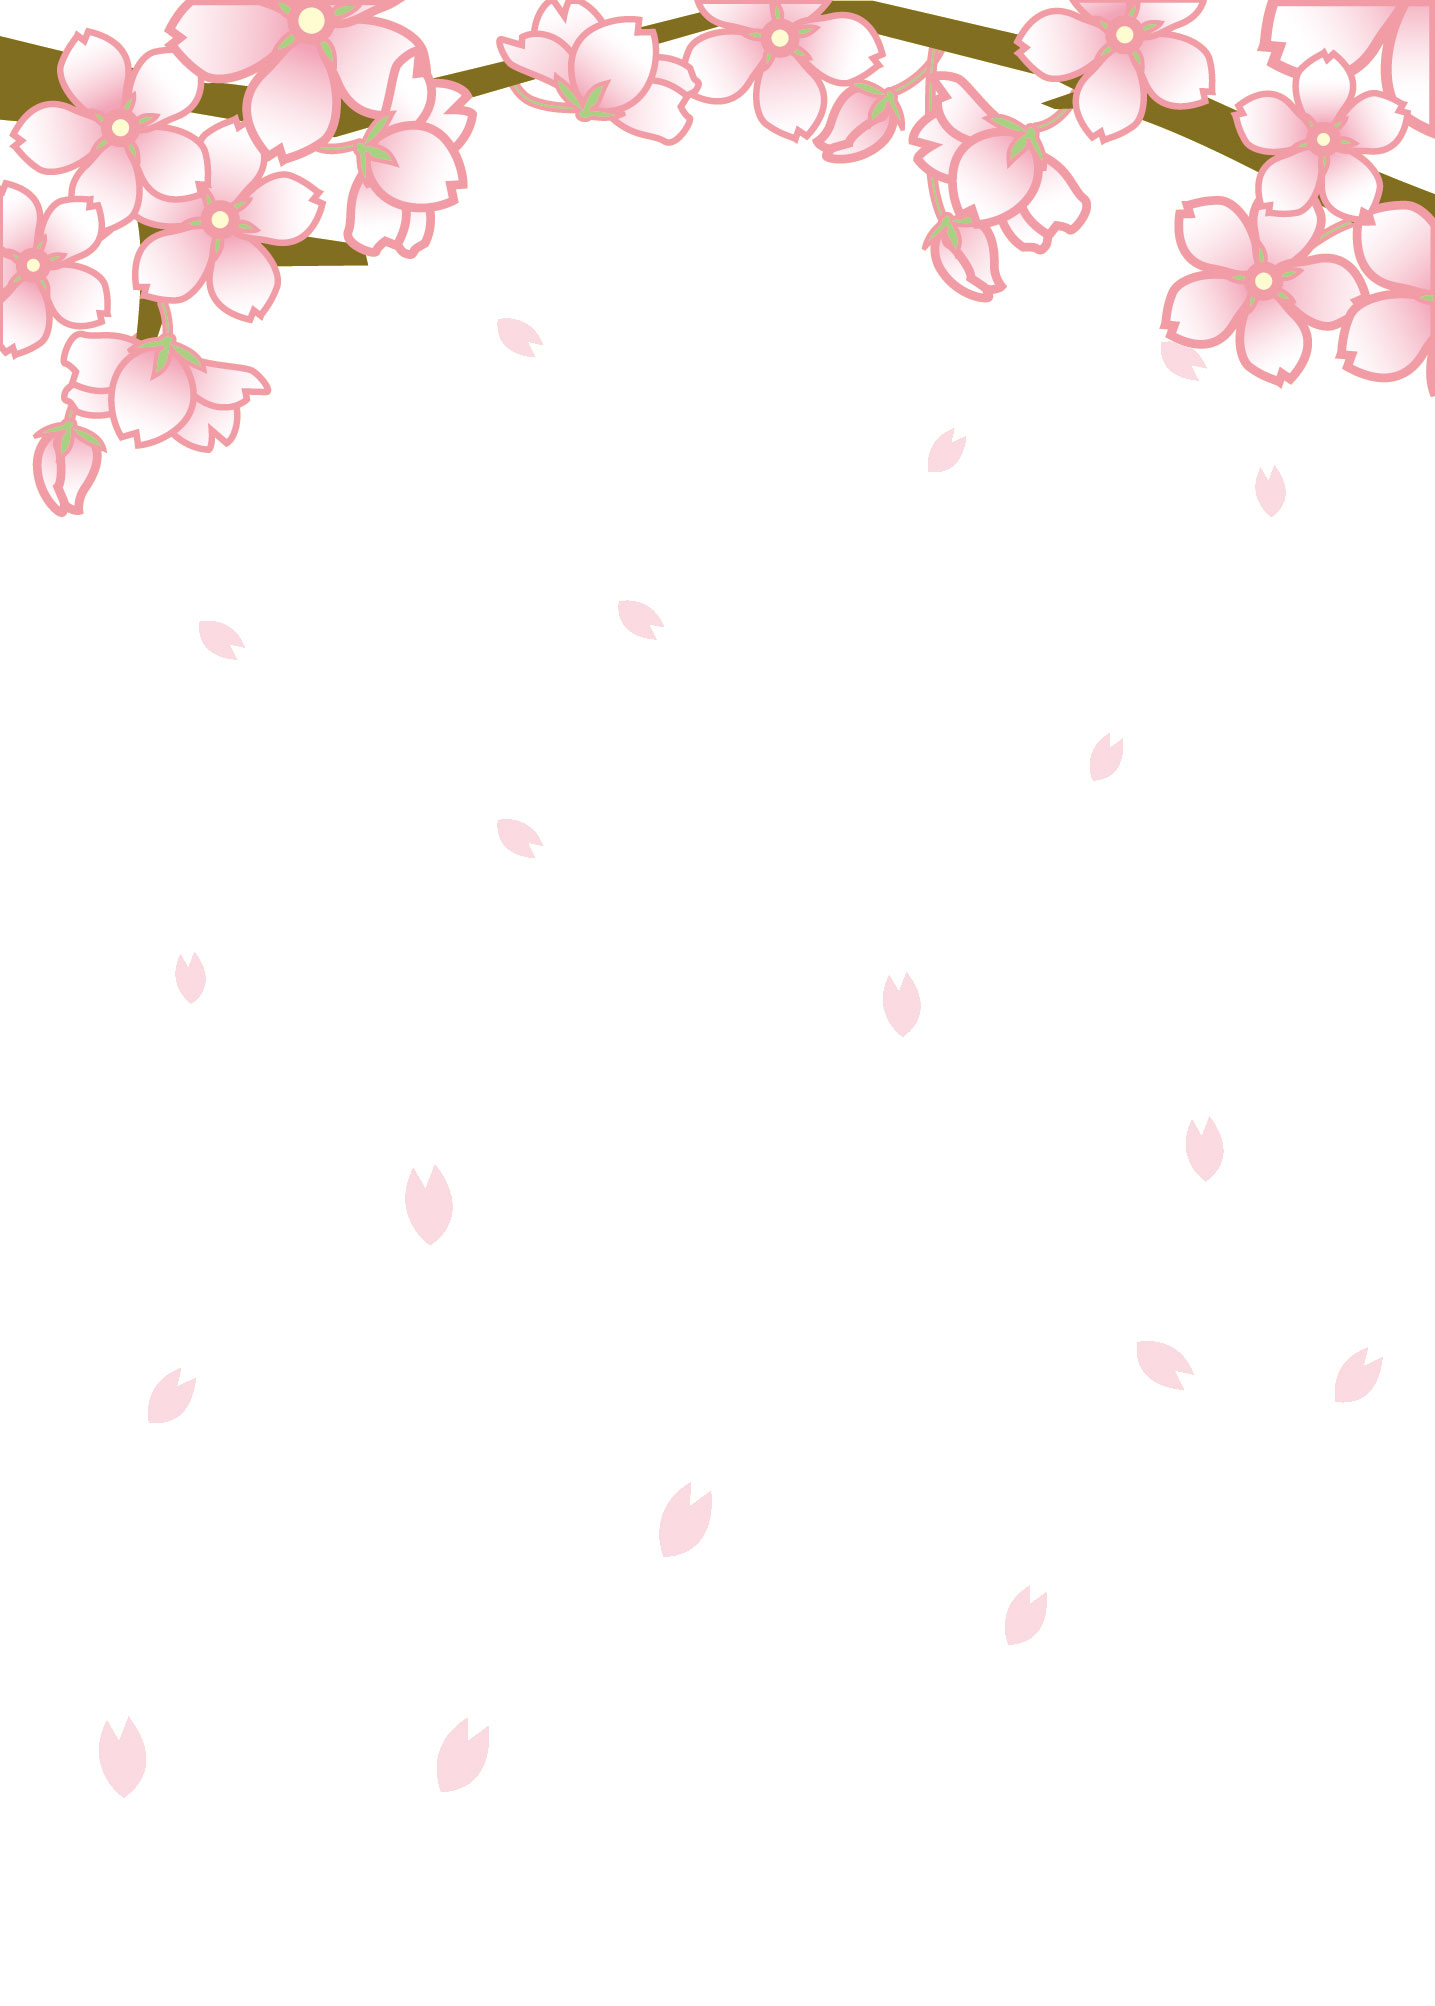 新鮮な壁紙 桜 イラスト 花の画像